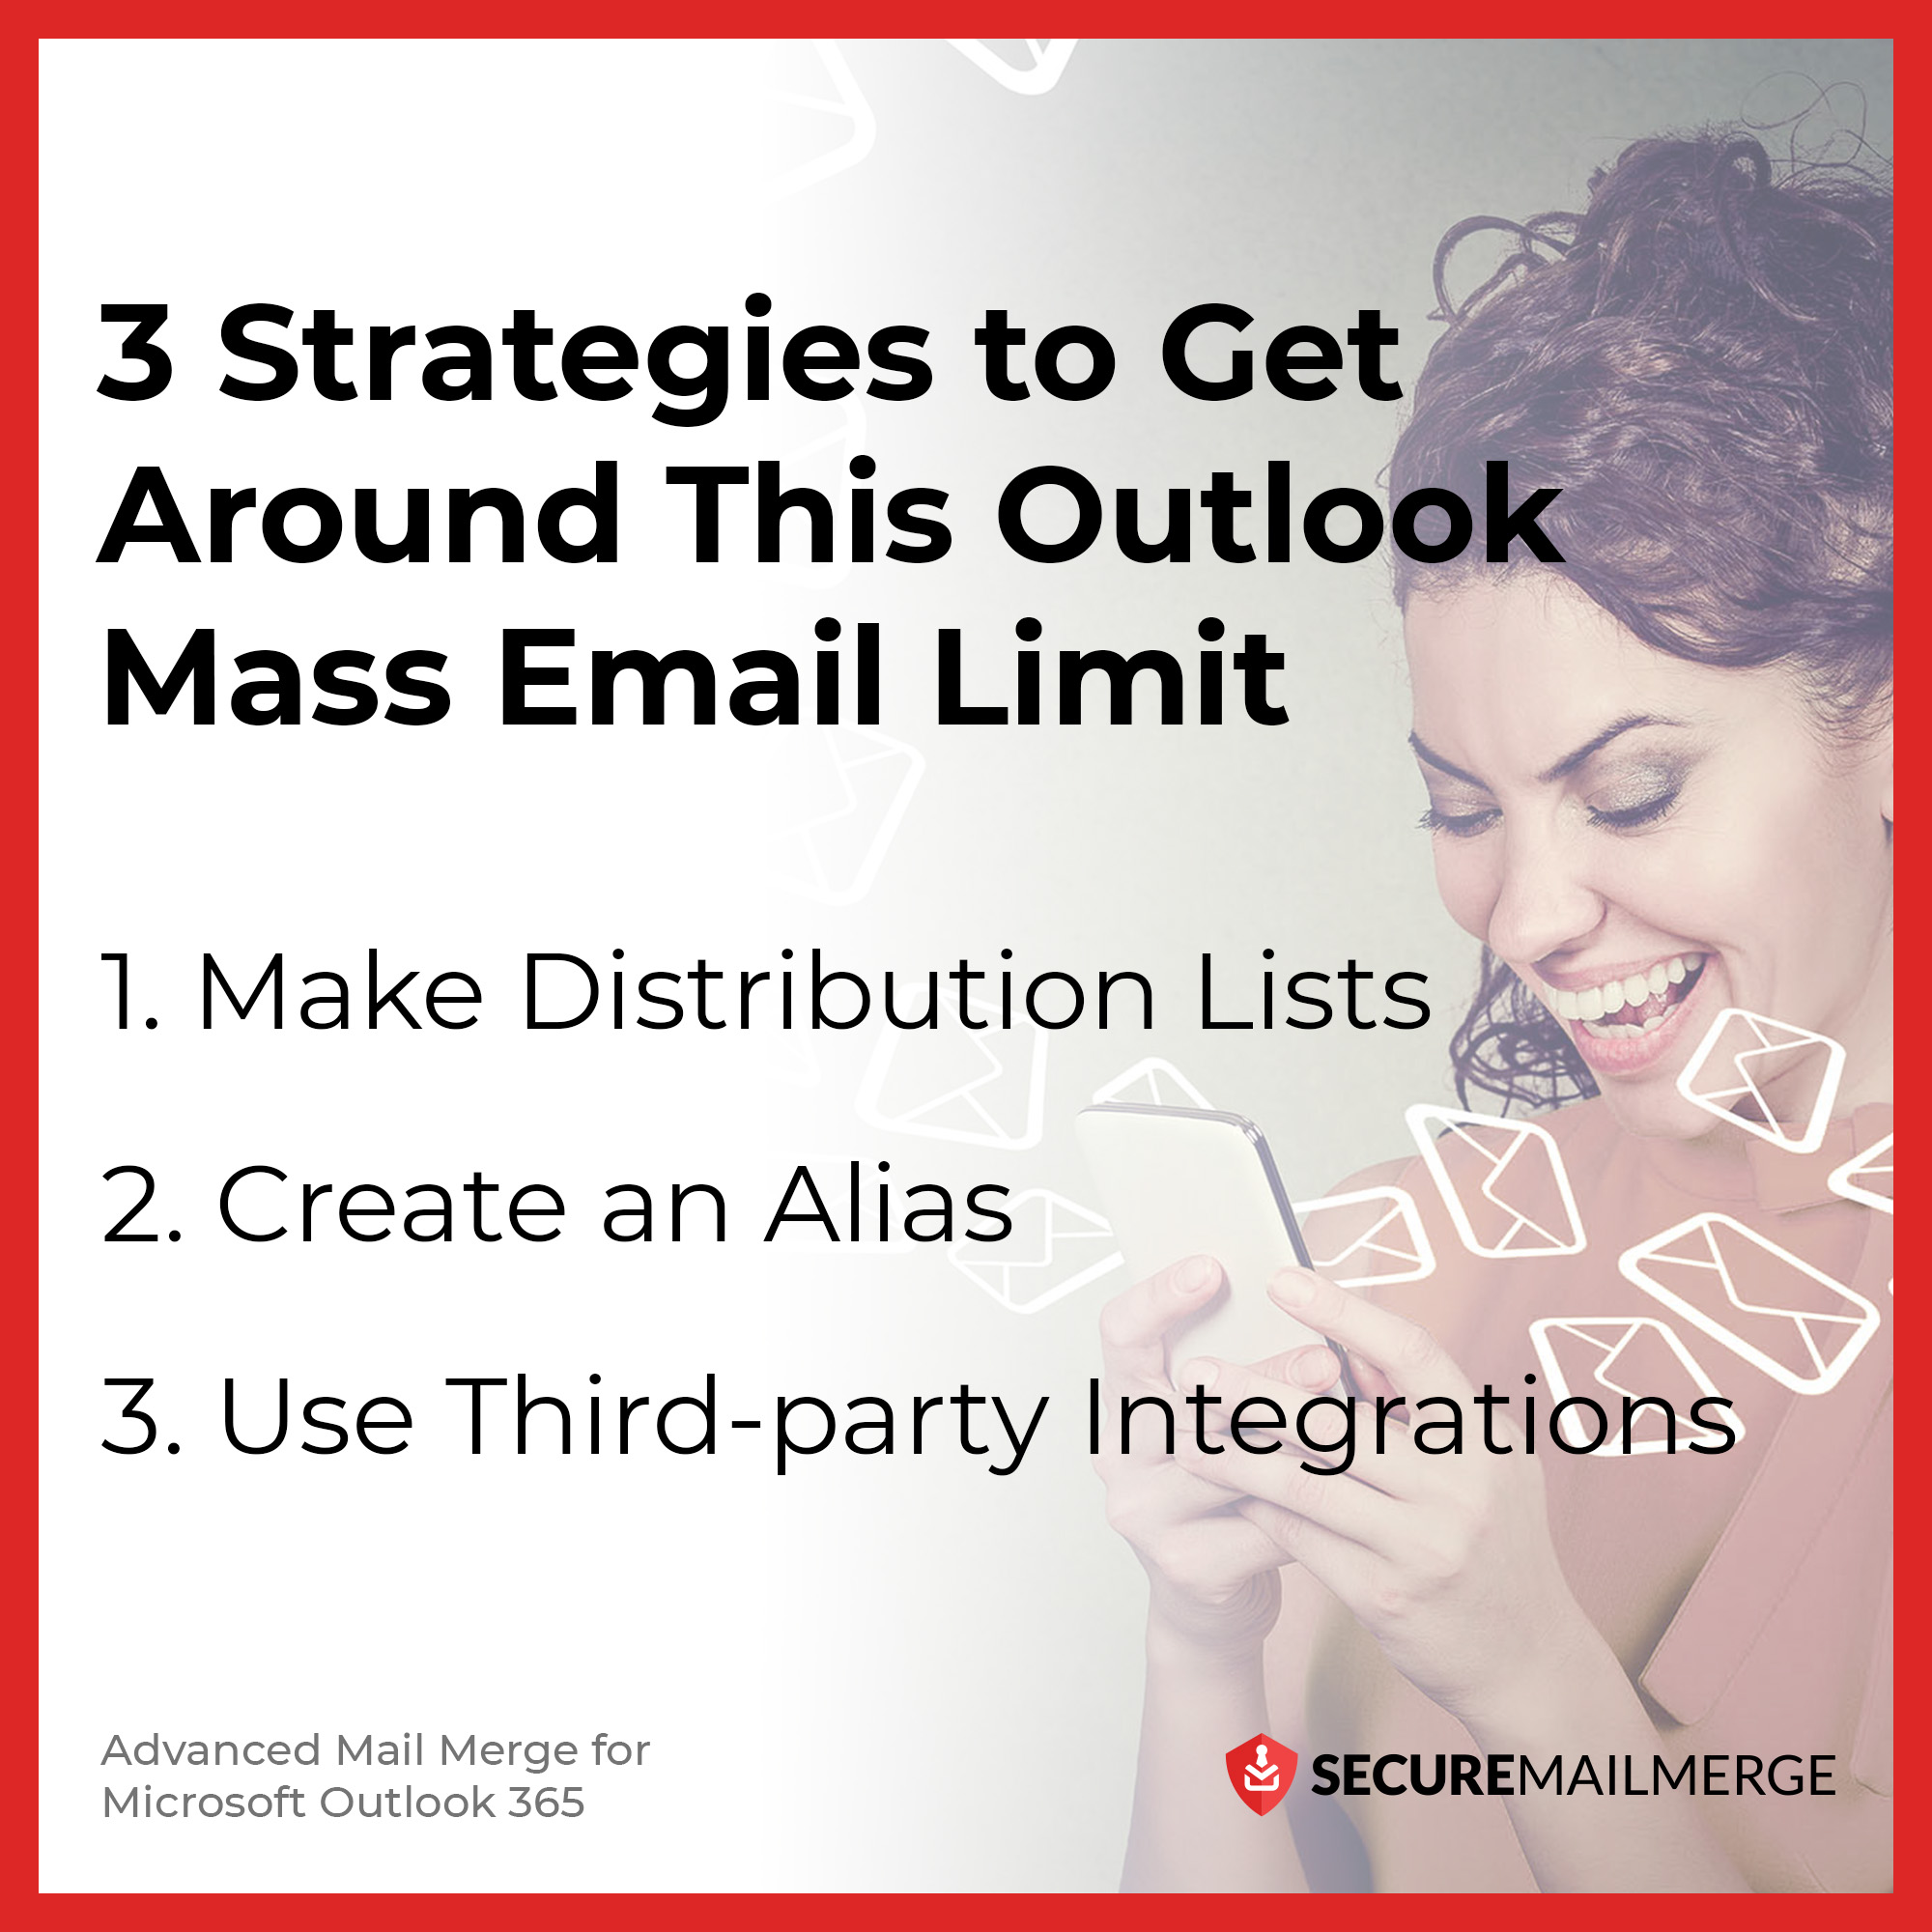 3 stratégies pour contourner la limite d'envoi d'e-mails en masse imposée par Outlook